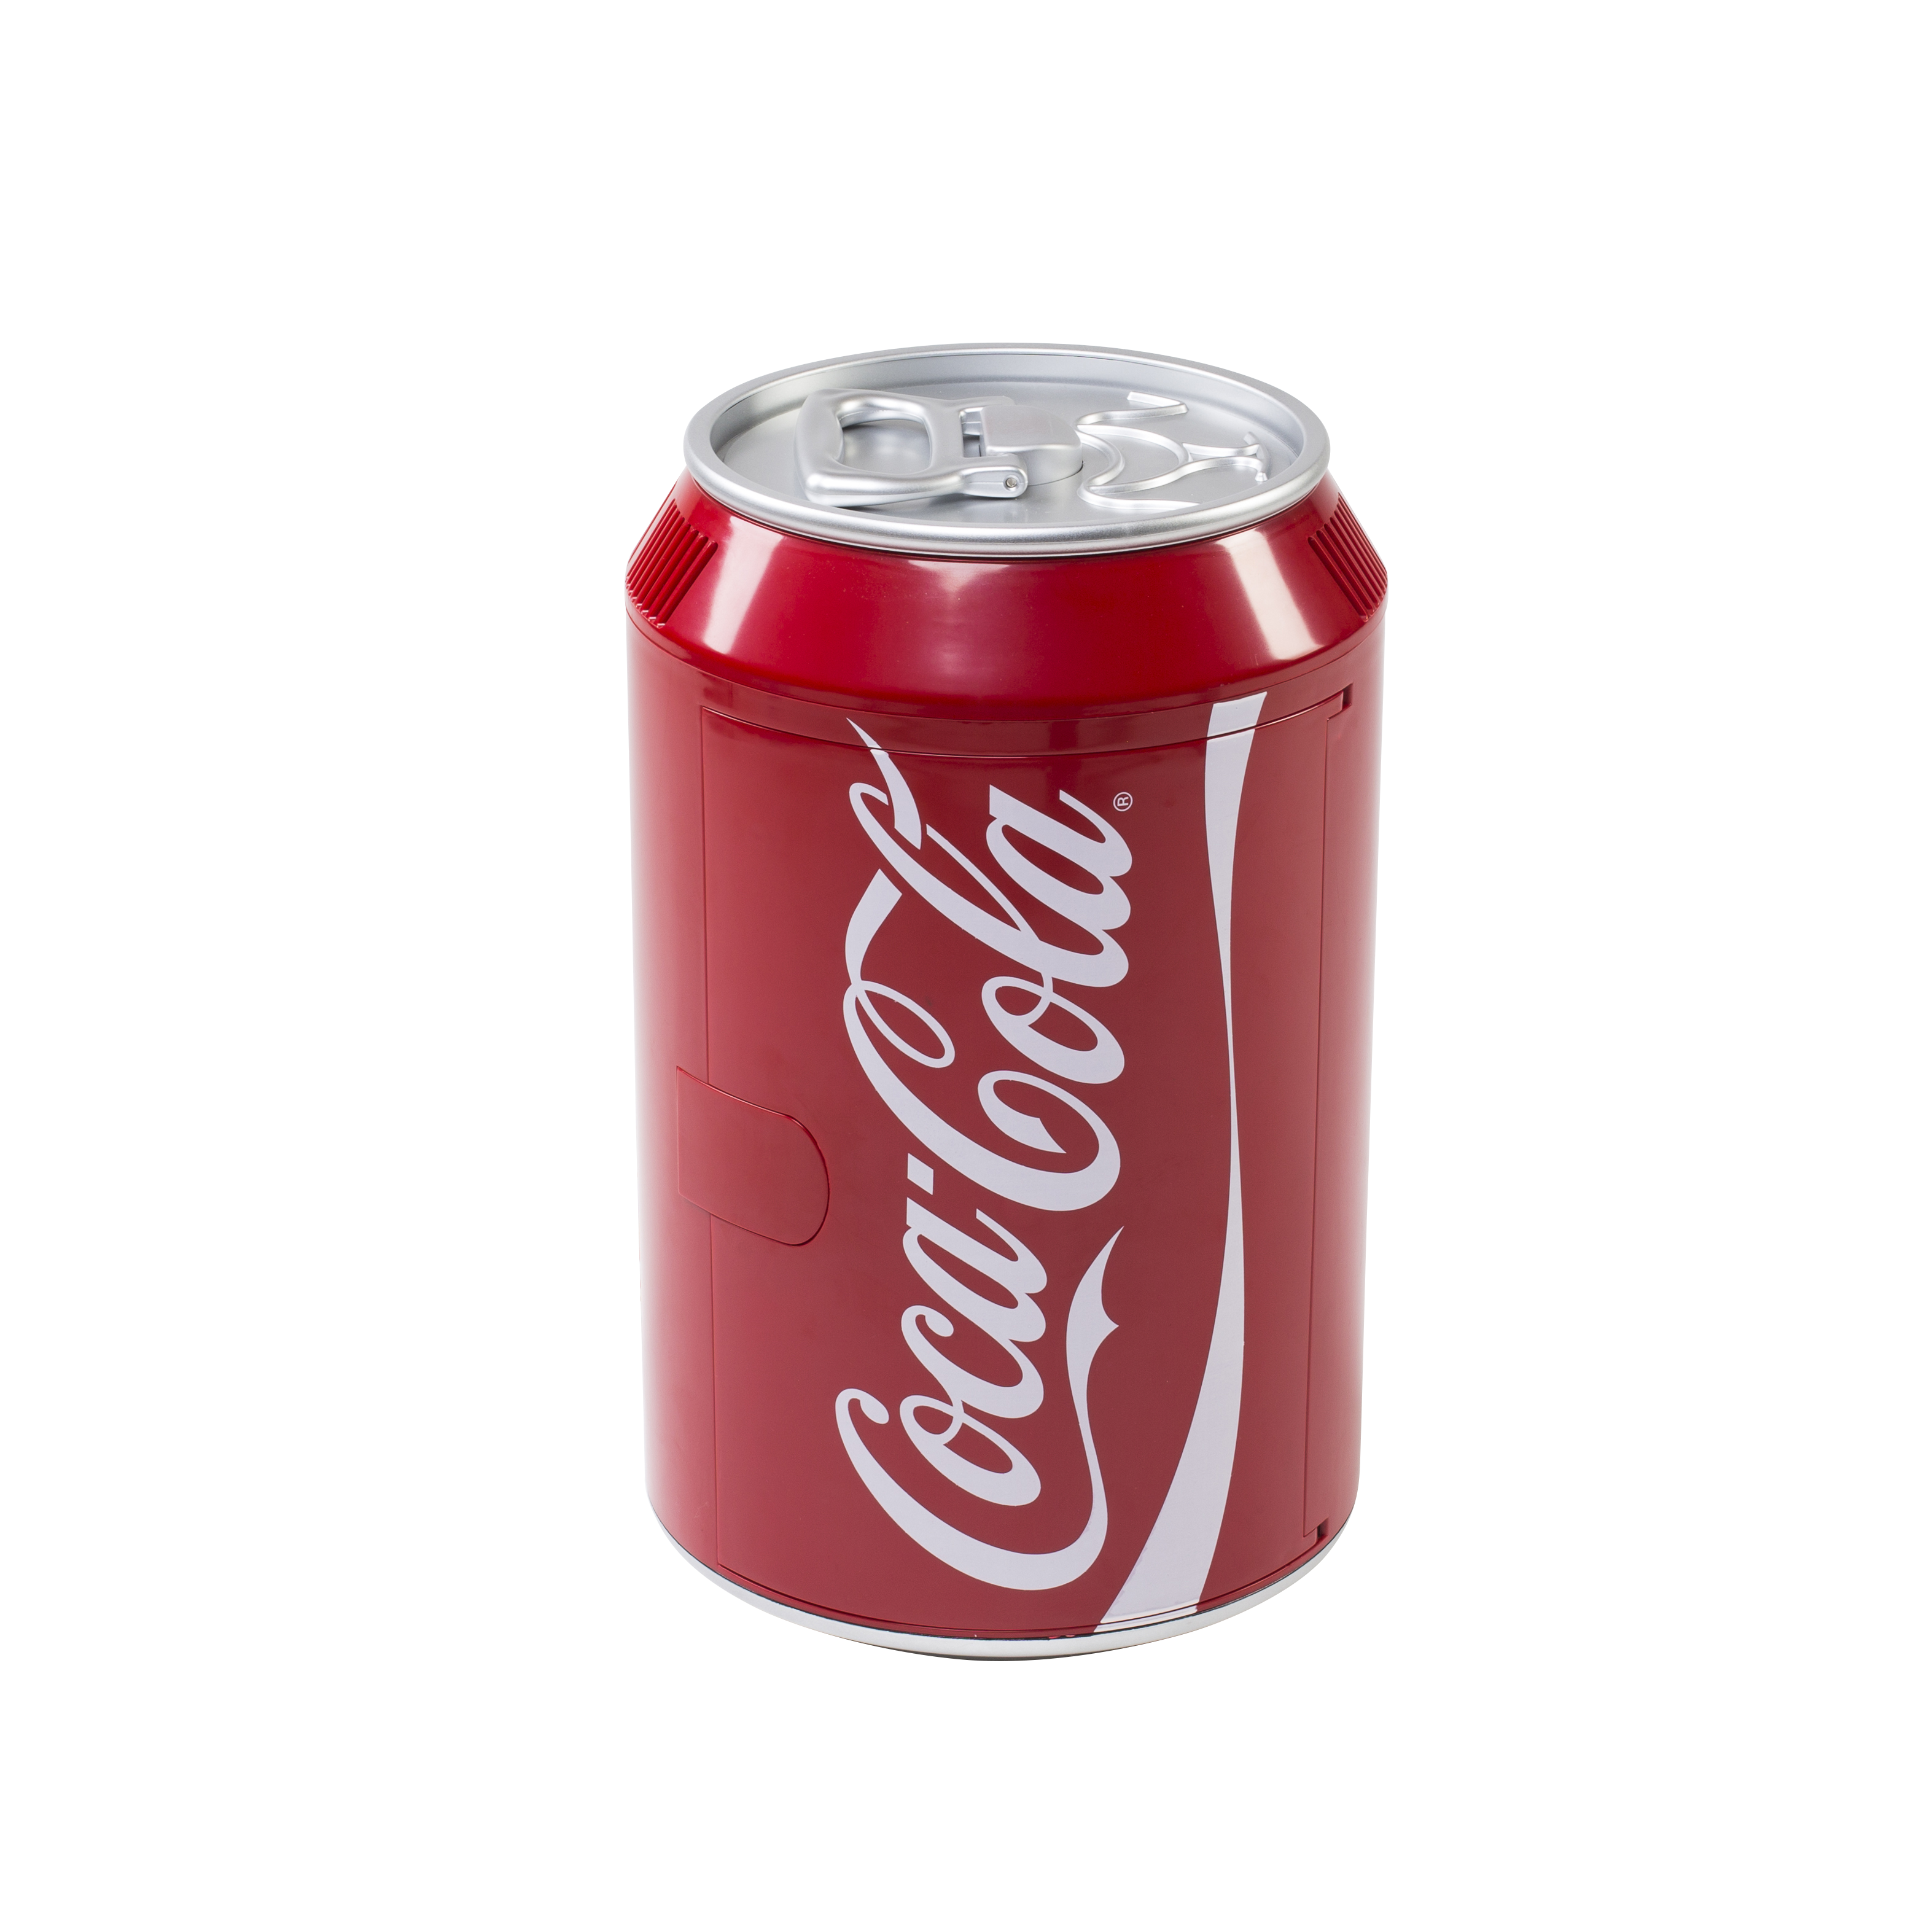 https://www.norma24.de/media/image/ac/ea/14/1076015-525600-Cool-Can-10-Coca-Cola-Mini-Kuehlschrank-Cool-Can-10-12-230V-9-Liter.png